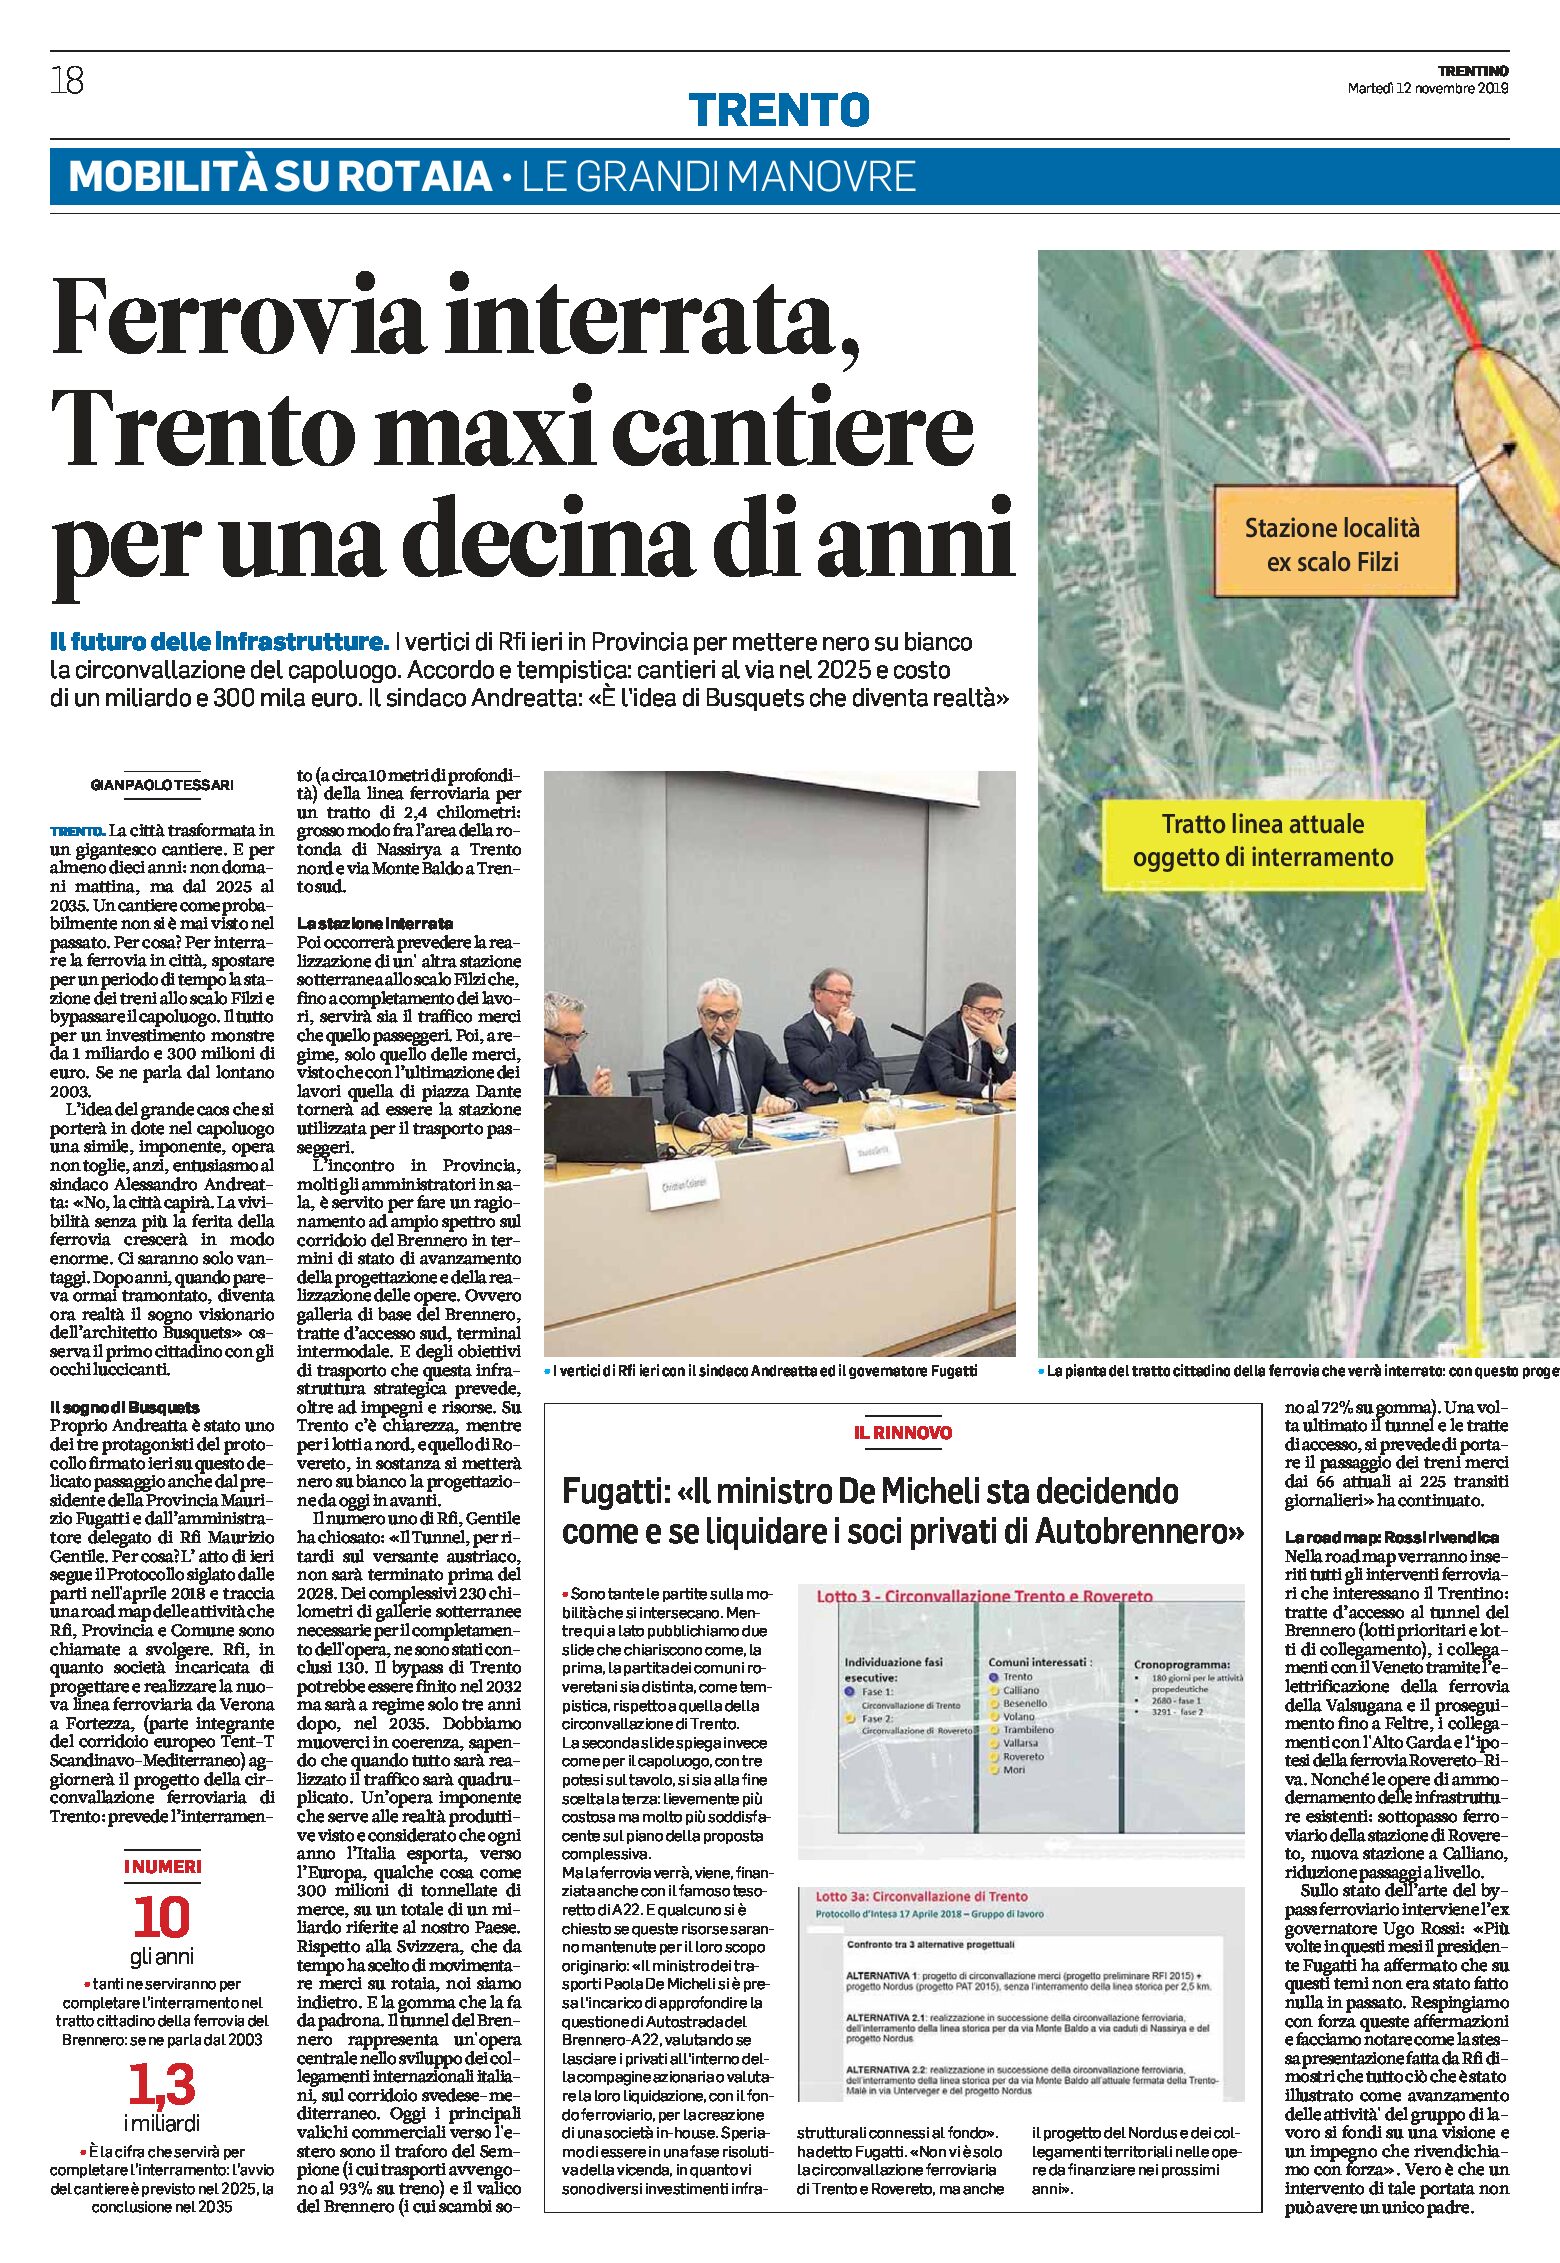 Trentino, mobilità su rotaia: Trento ferrovia interrata, Valsugana elettrica, Rovereto-Riva progetto leggero